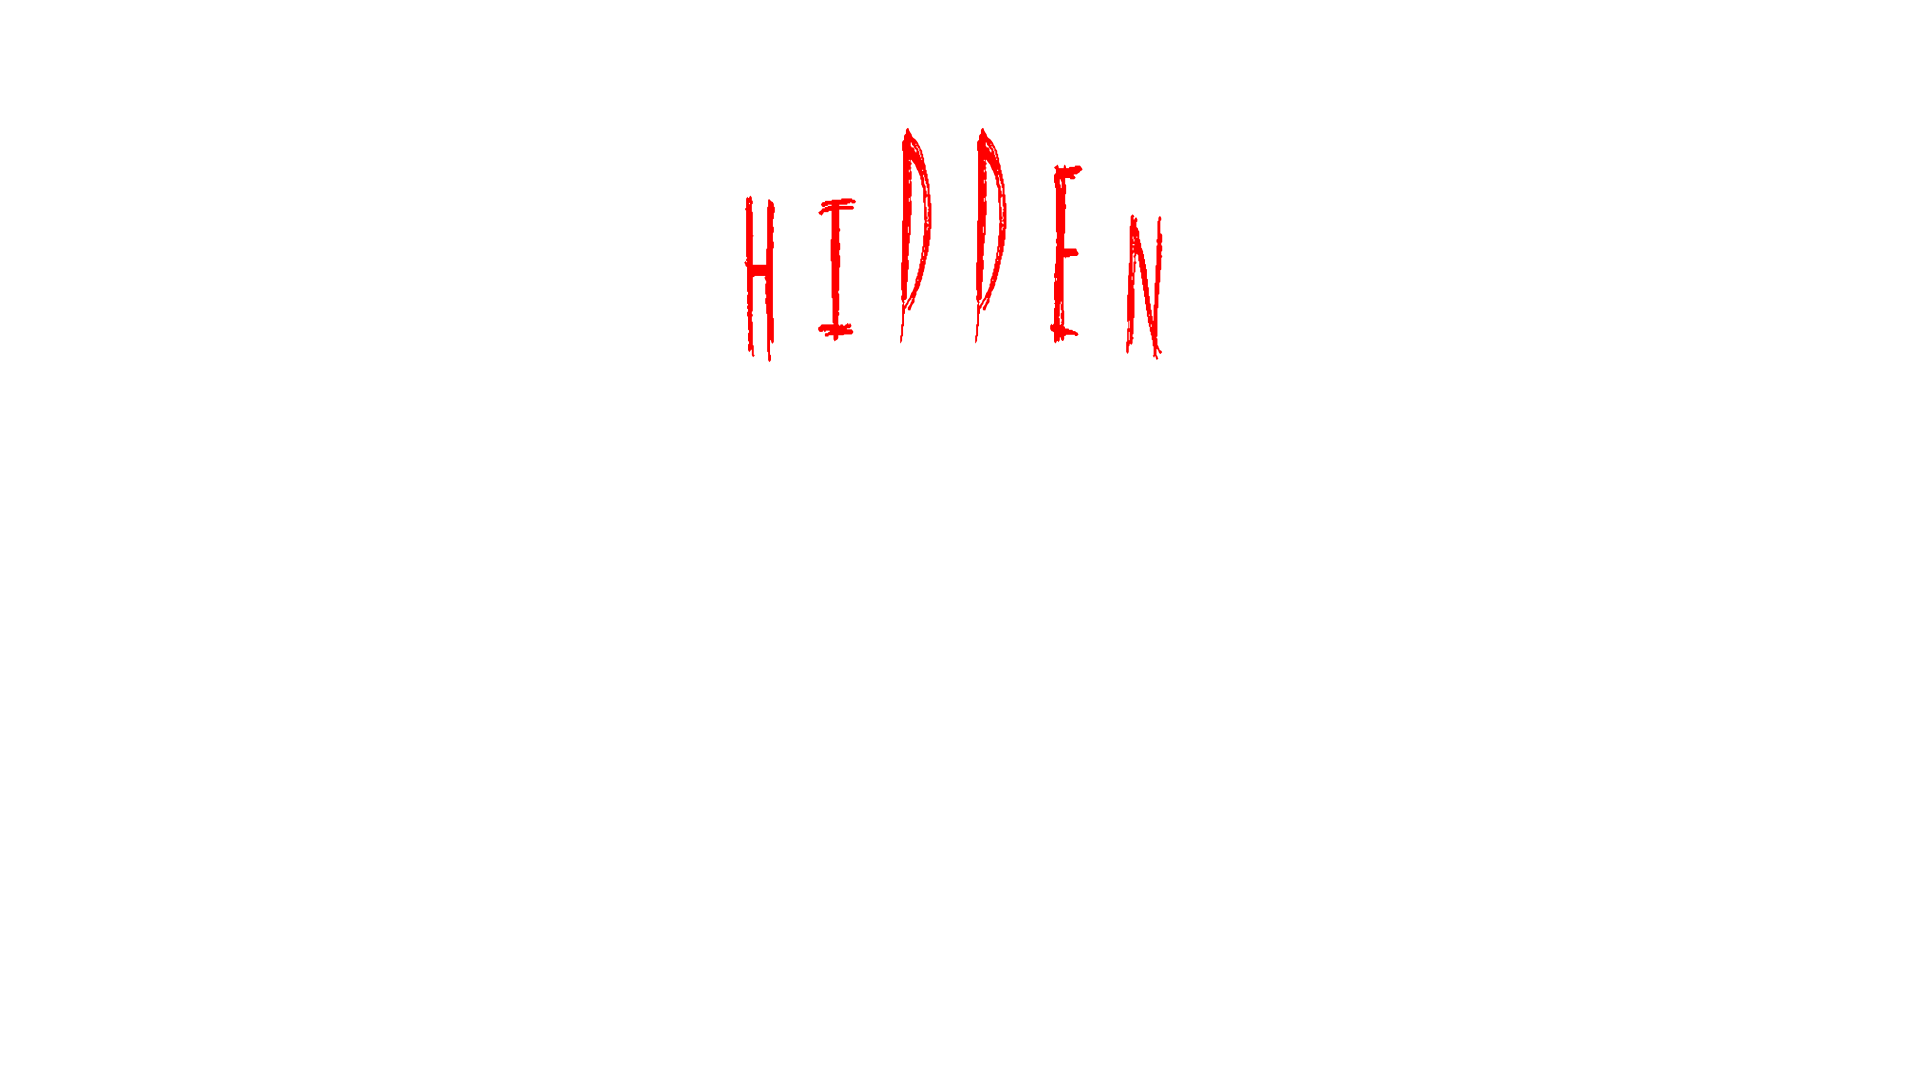 Hidden Nightmares